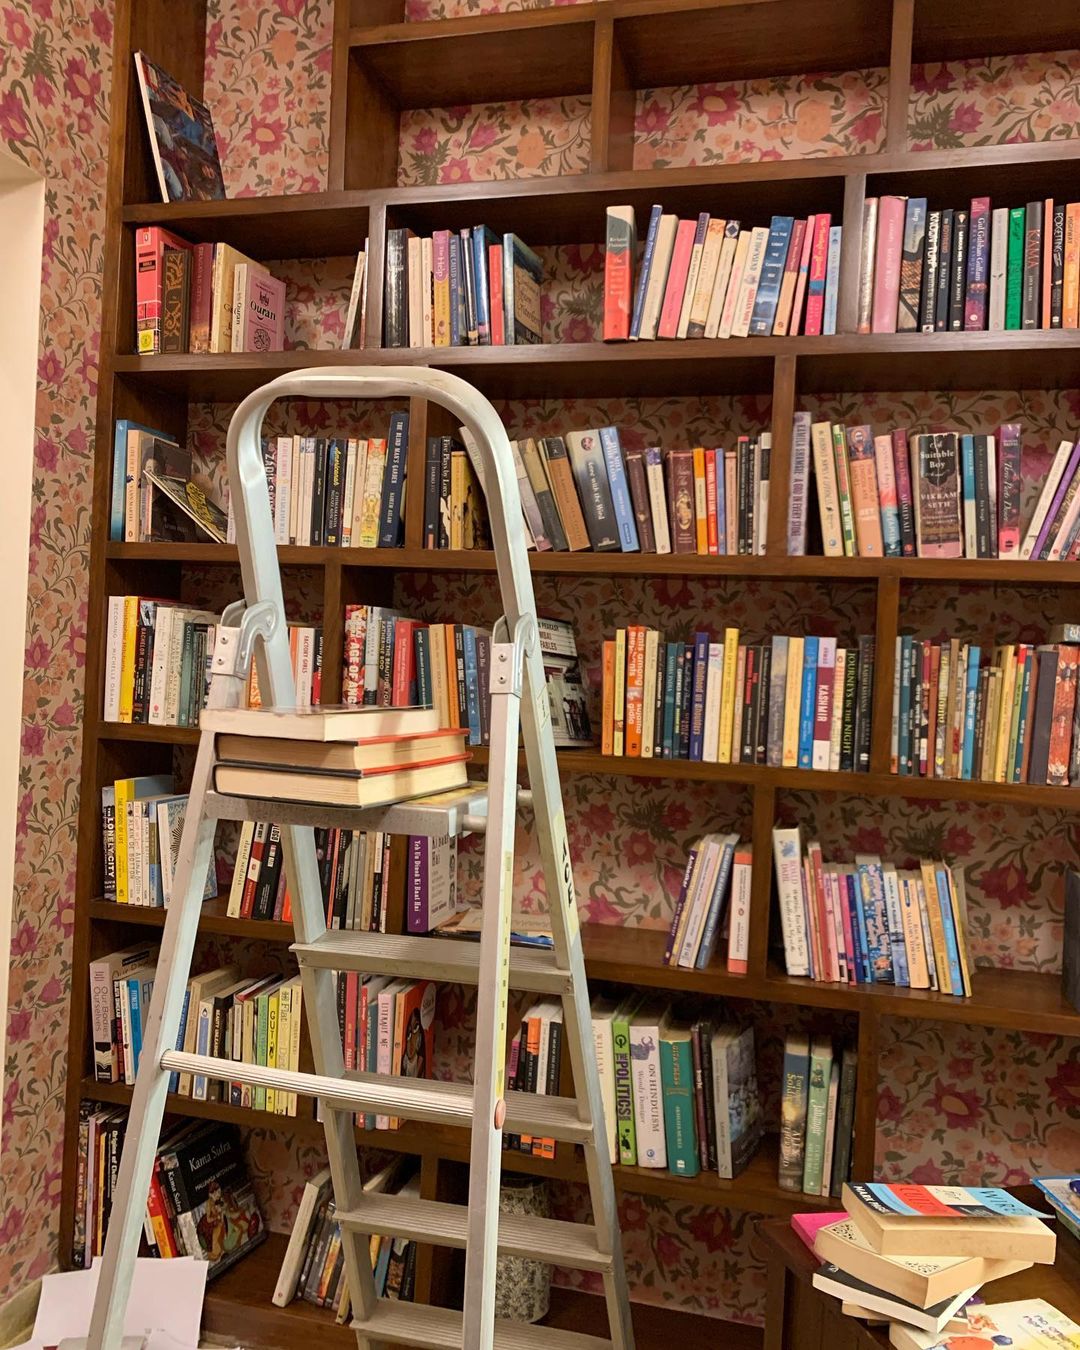 Swara Bhaskar's house library